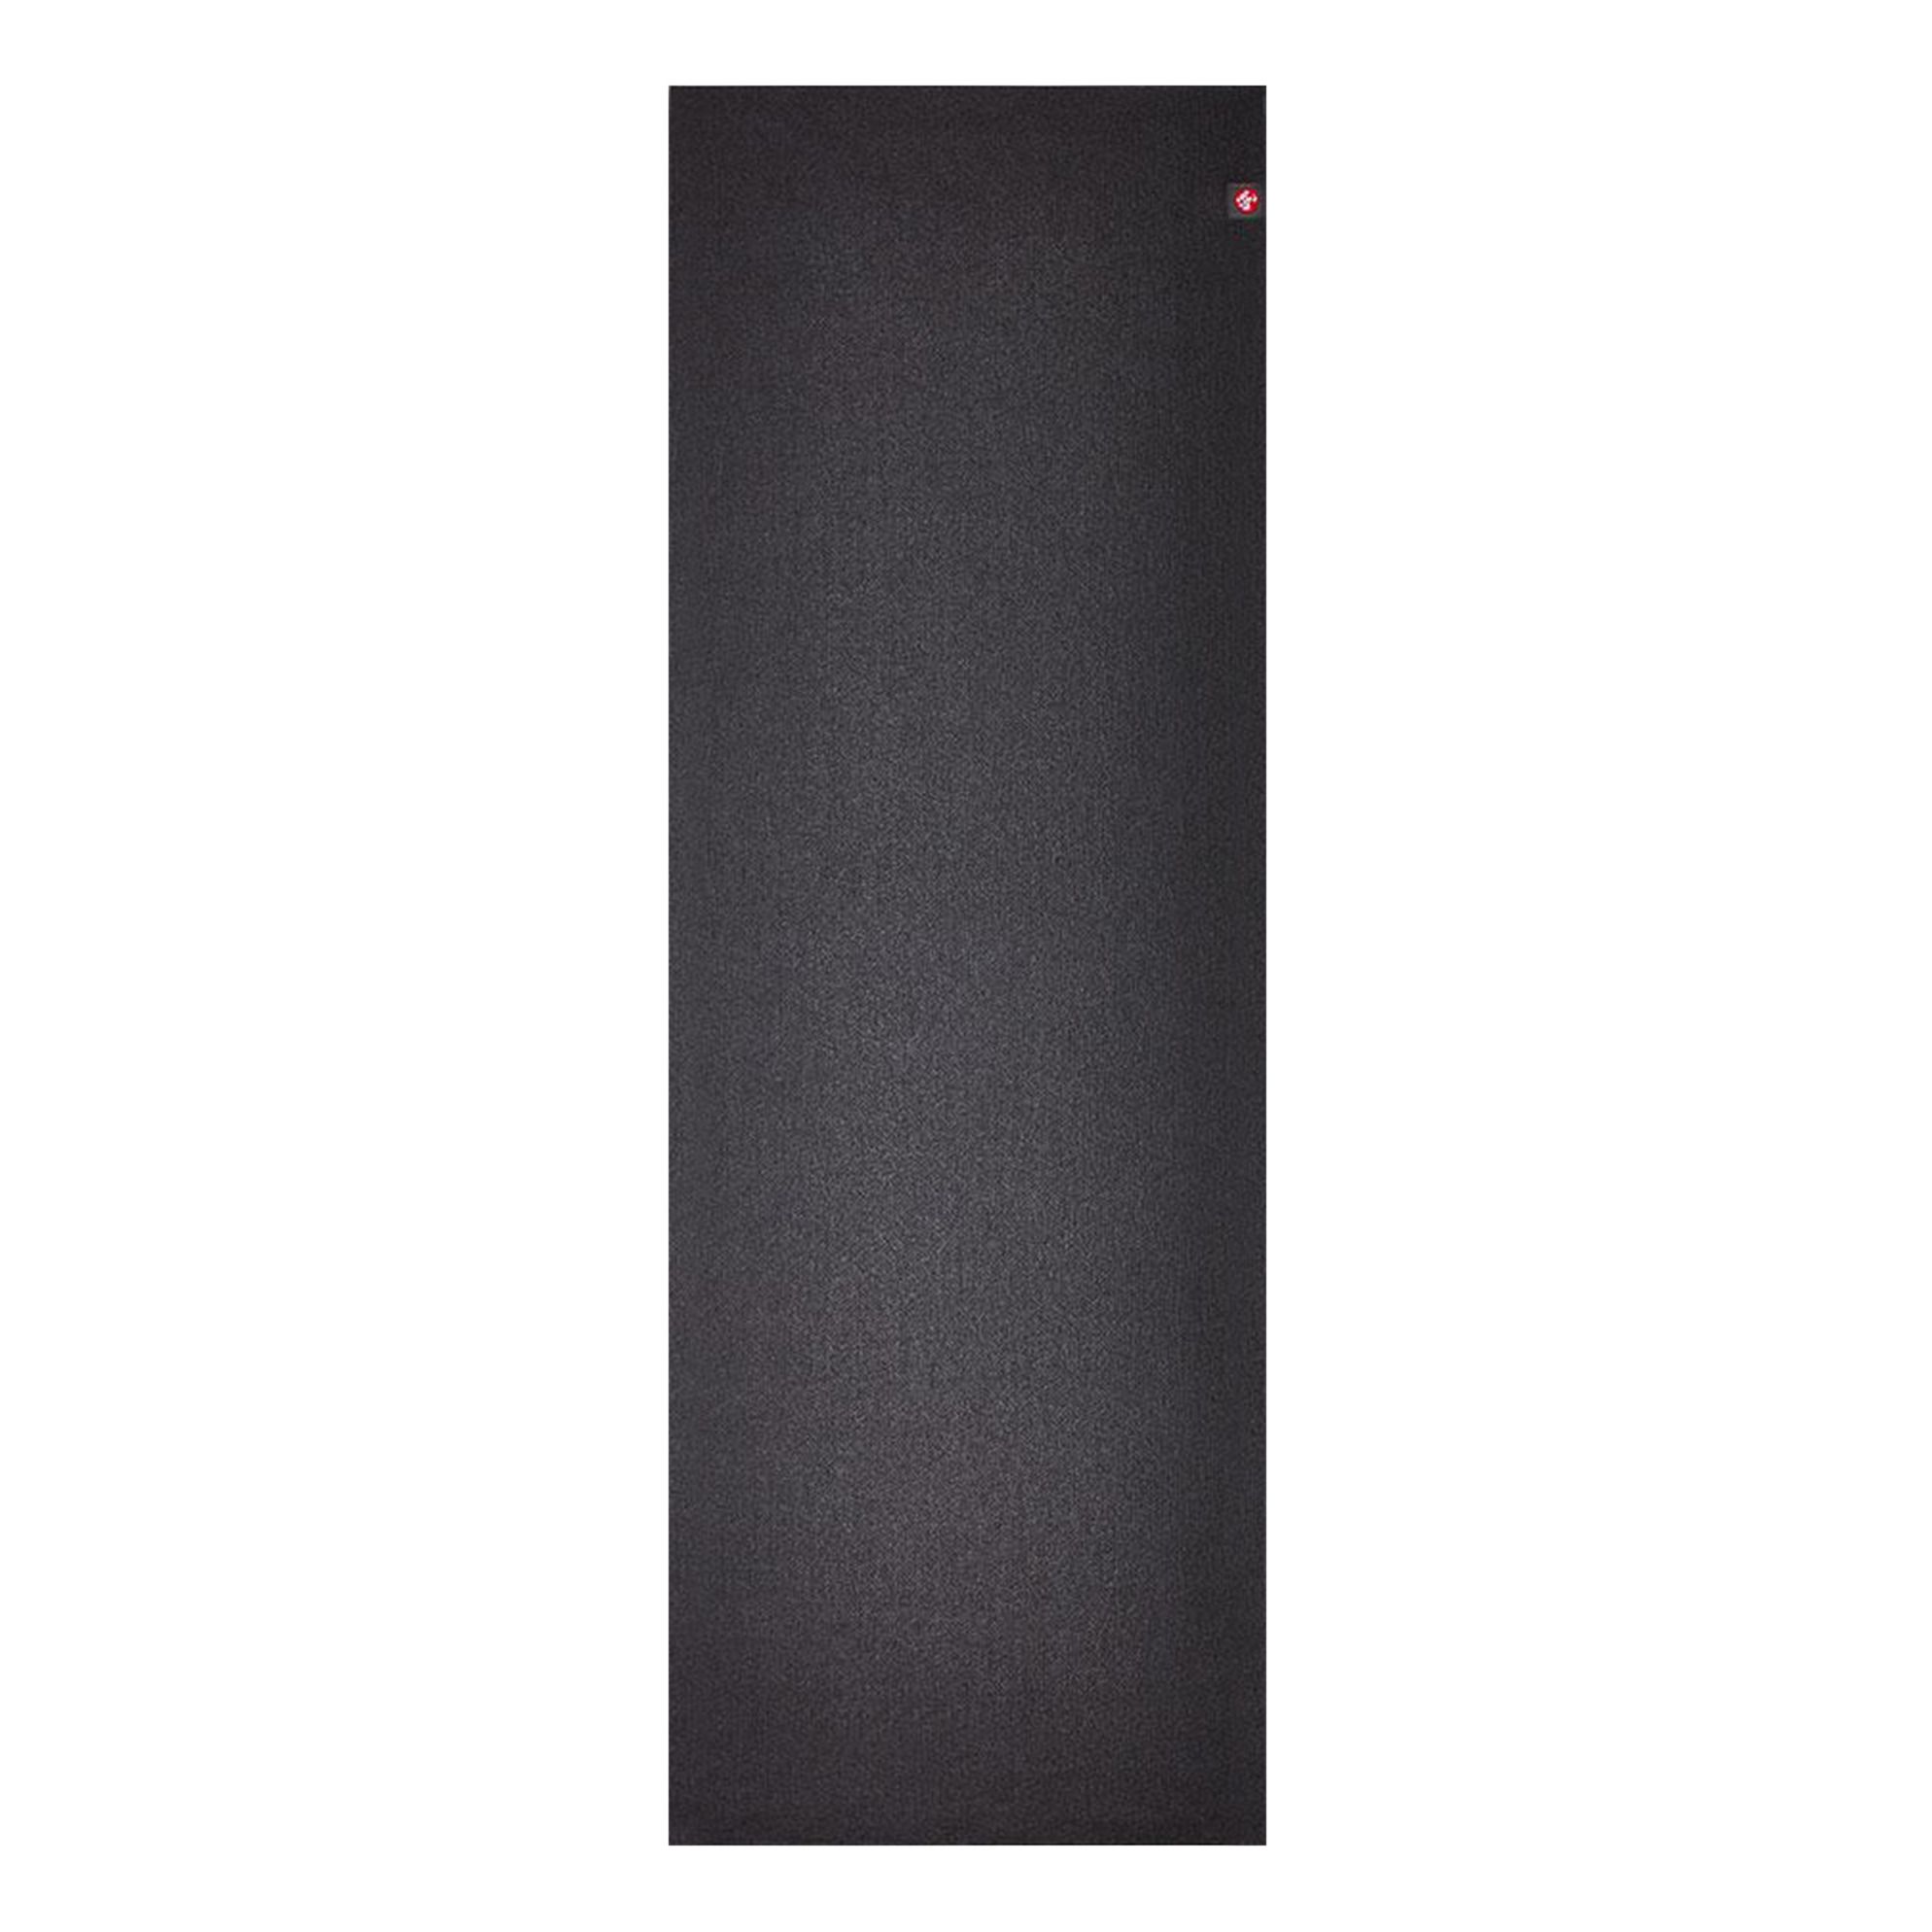 Manduka - Tapis de Yoga eKO Superlite Travel 1.5mm - Femme - Noir